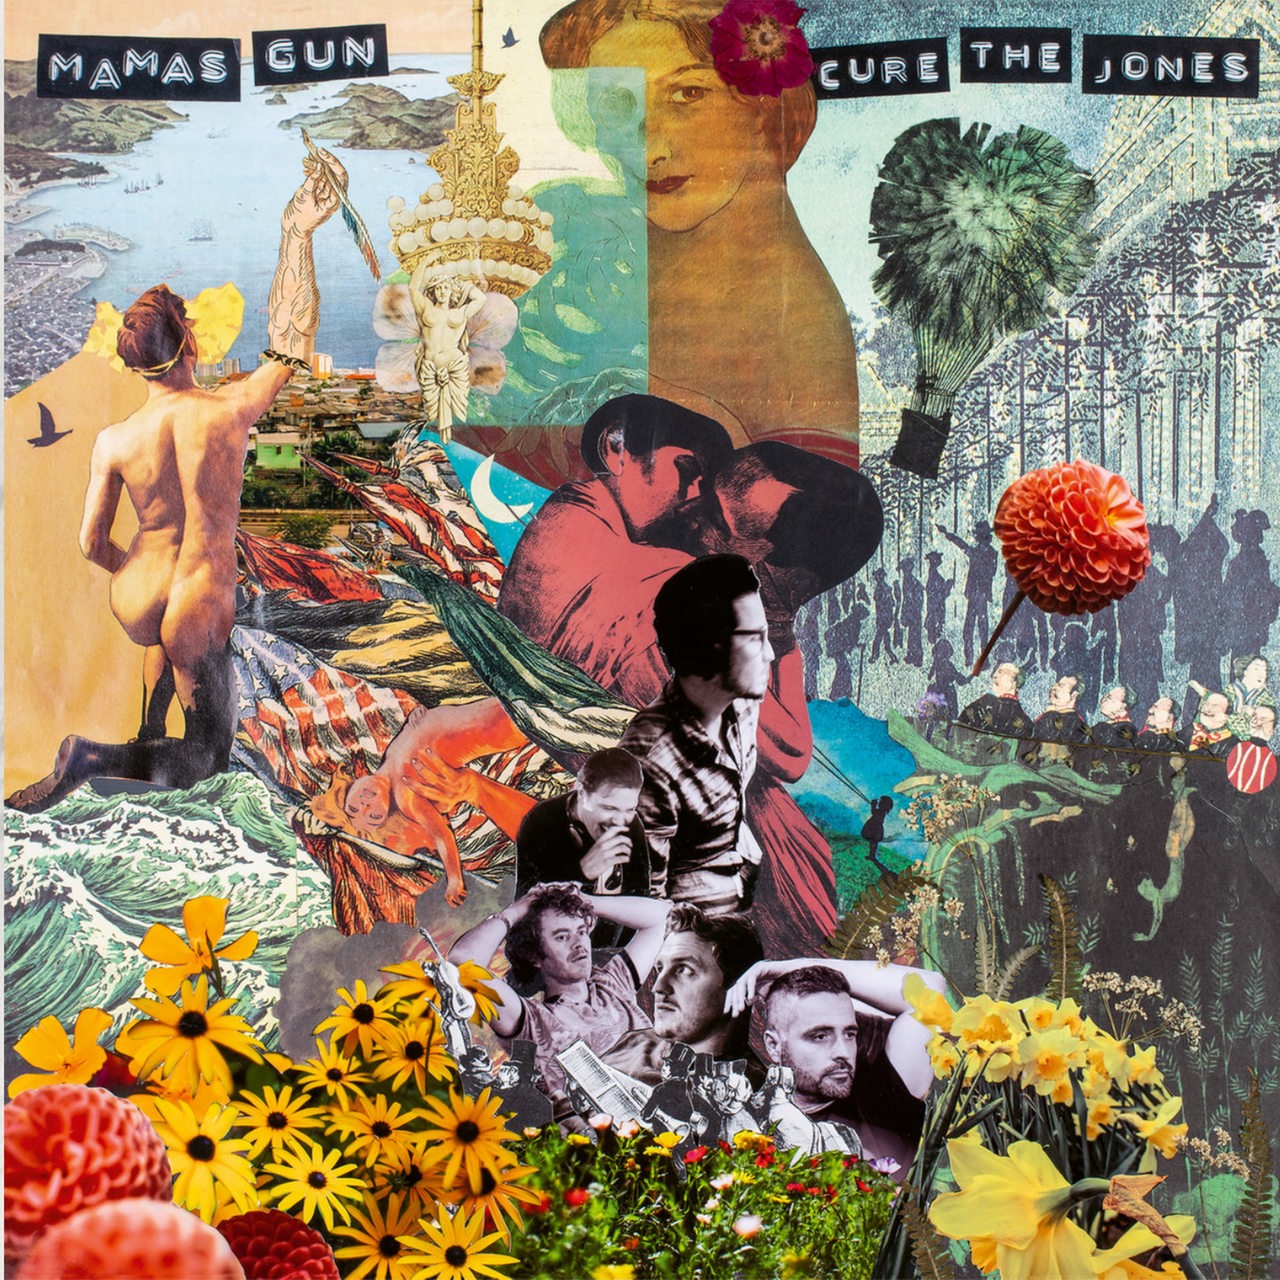 Cover: Mamas Gun, Cure the Jones, Legere Recordings